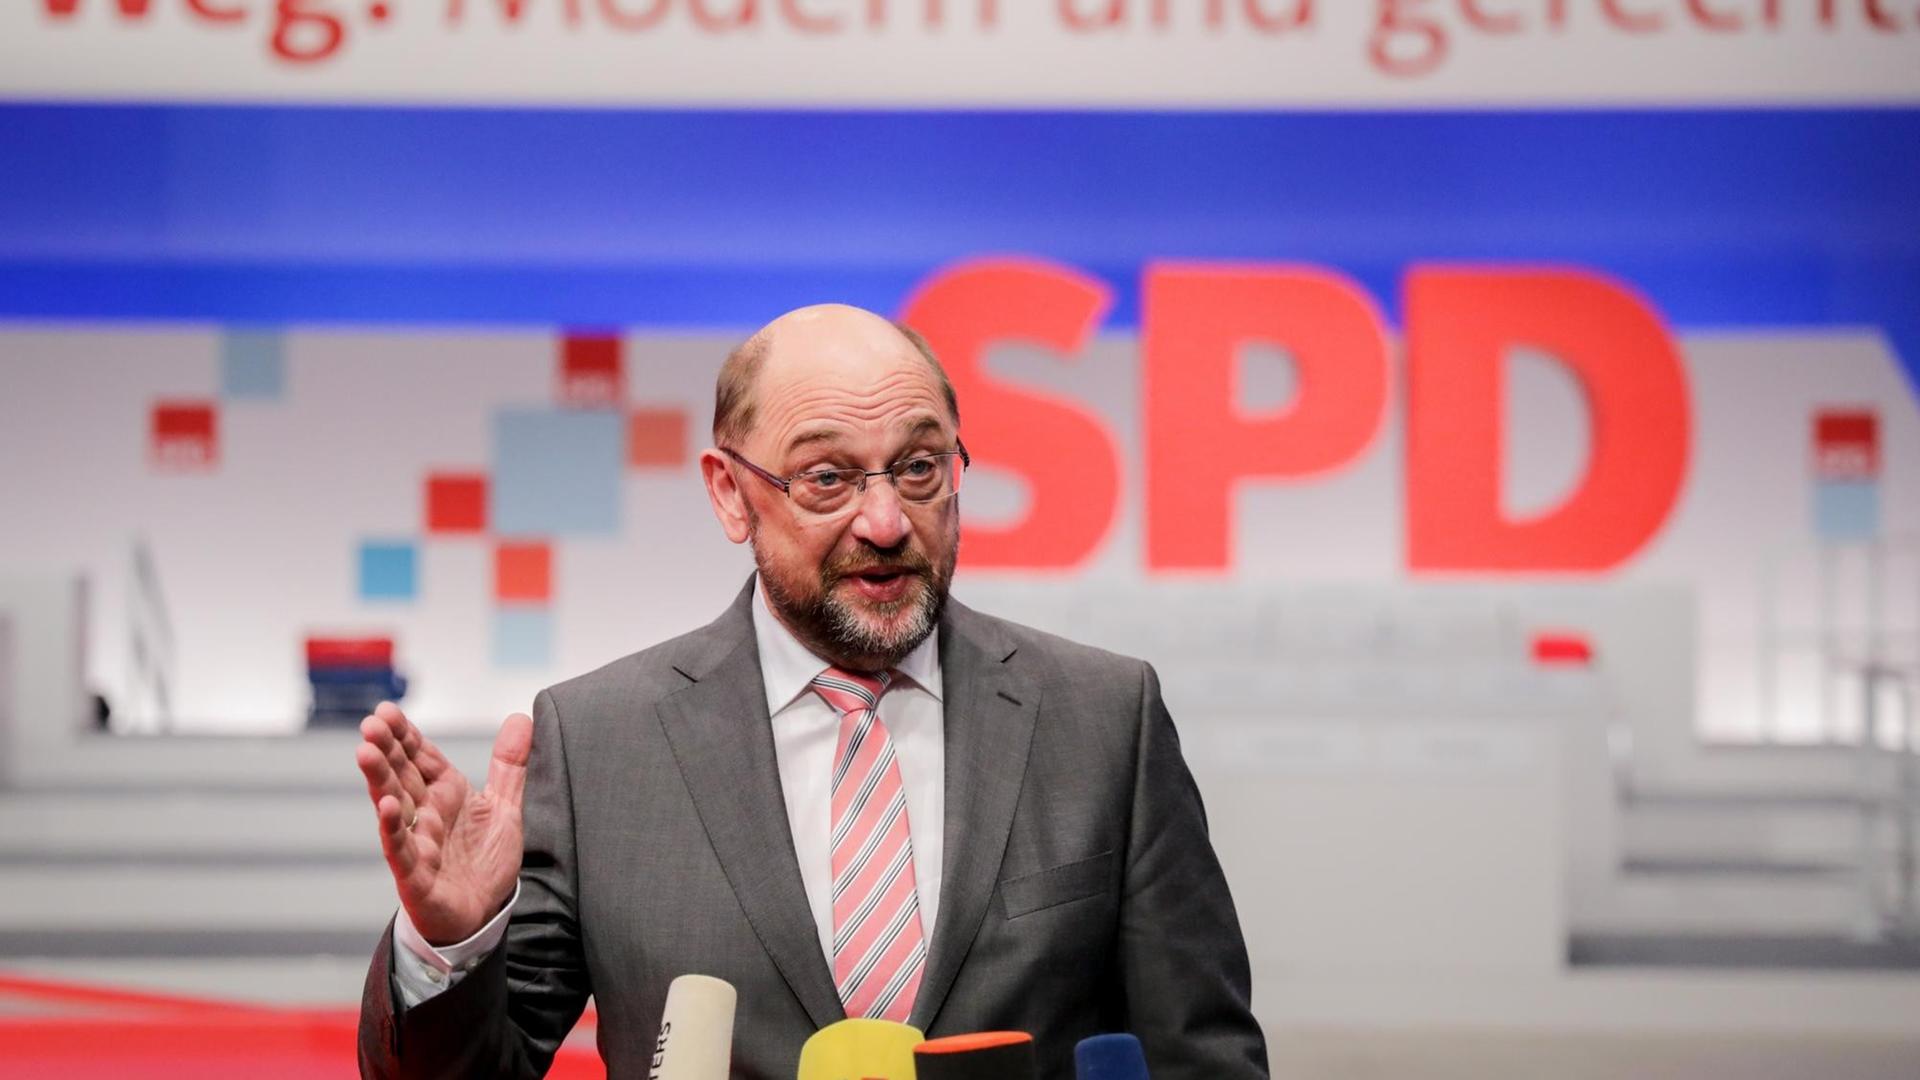 Der SPD-Parteivorsitzende, Martin Schulz, spricht am 06.12.2017 in Berlin im City Cube beim Hallenrundgang vor dem SPD-Bundesparteitag zu den Journalisten. Der Parteitag dauert vom 09.-11.12.2017.